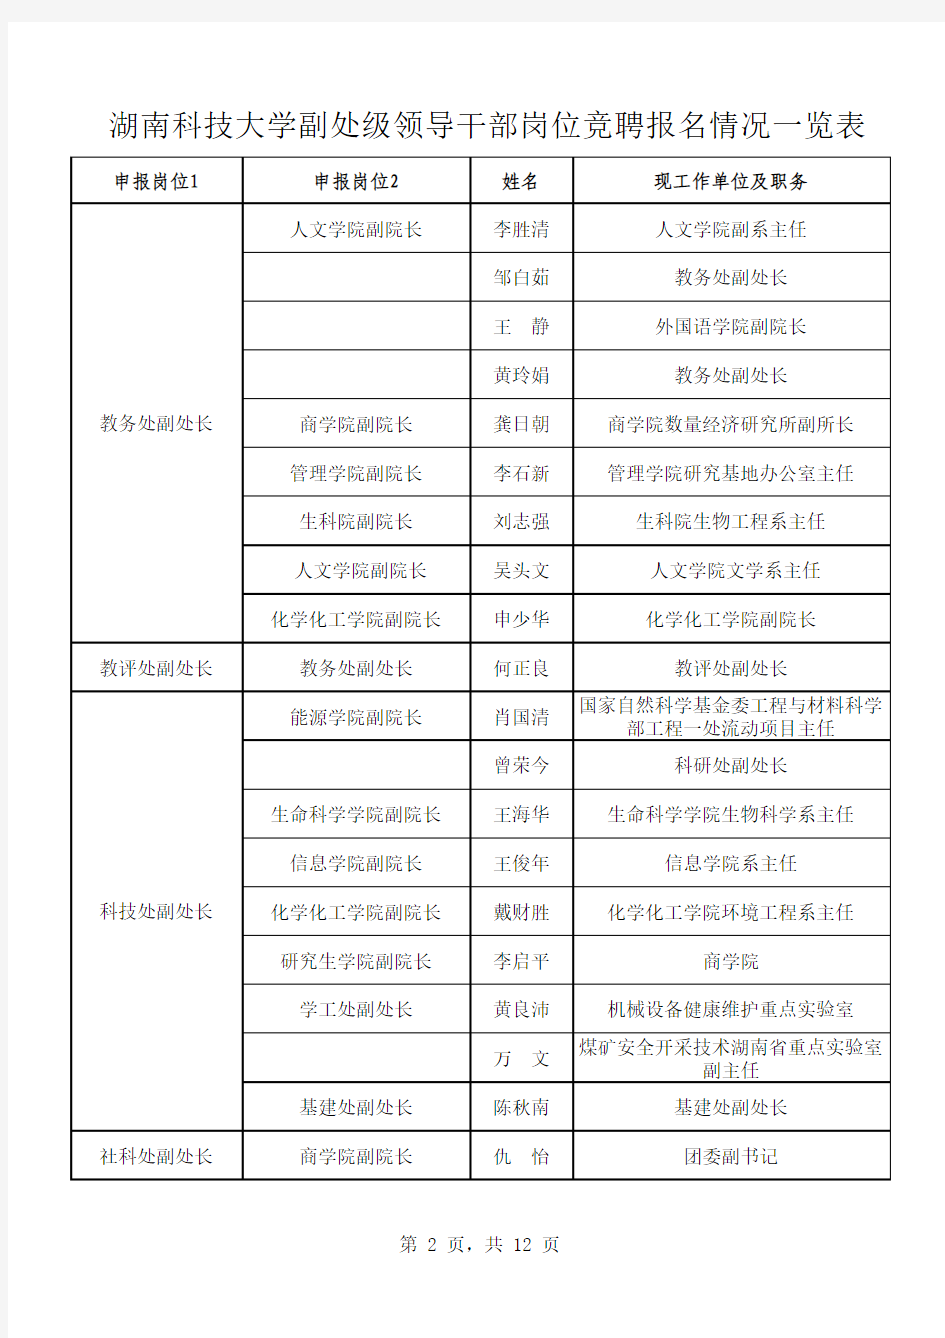 湖南科技大学副处级领导干部岗位竞聘报名情况一览表